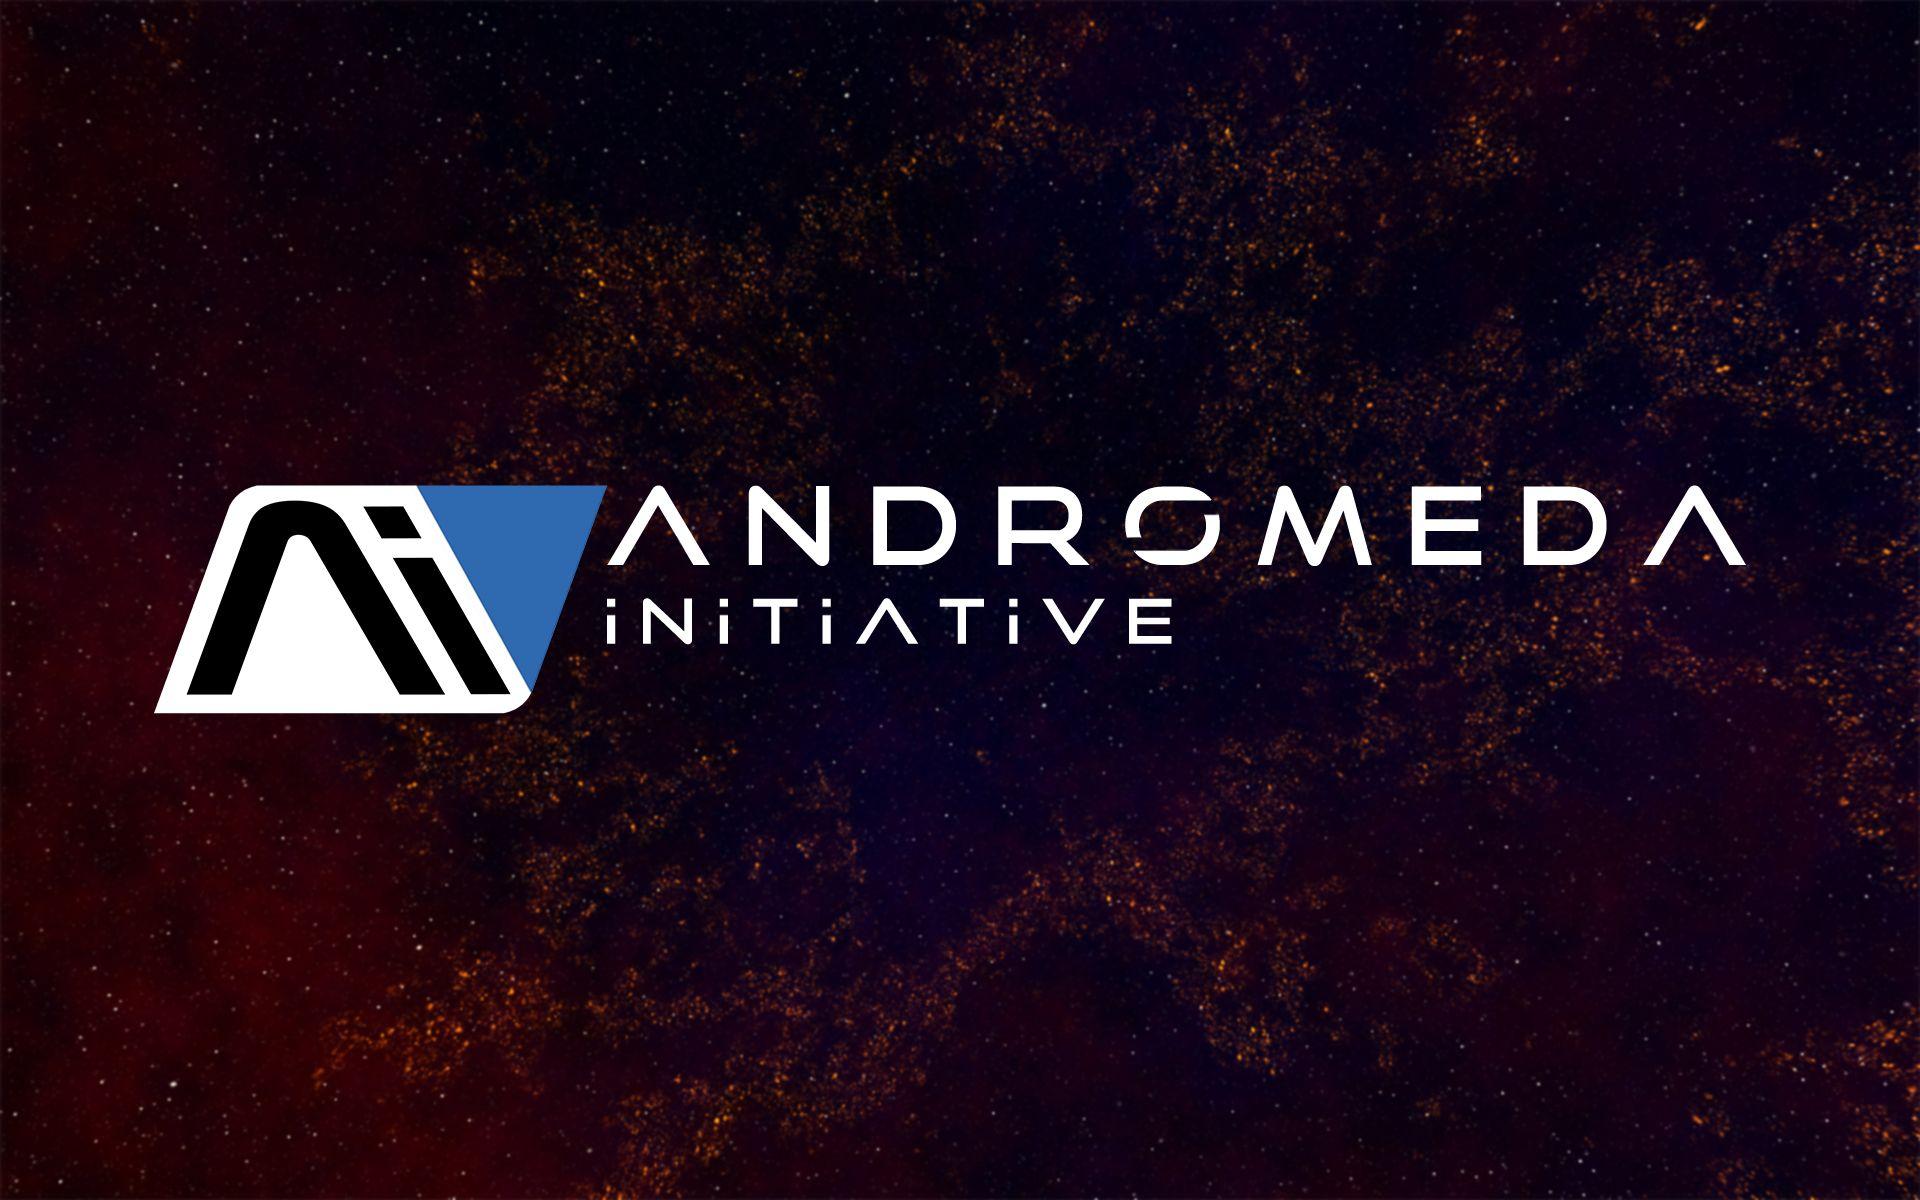 Andromeda Initiative' Wallpaper Effect Andromeda